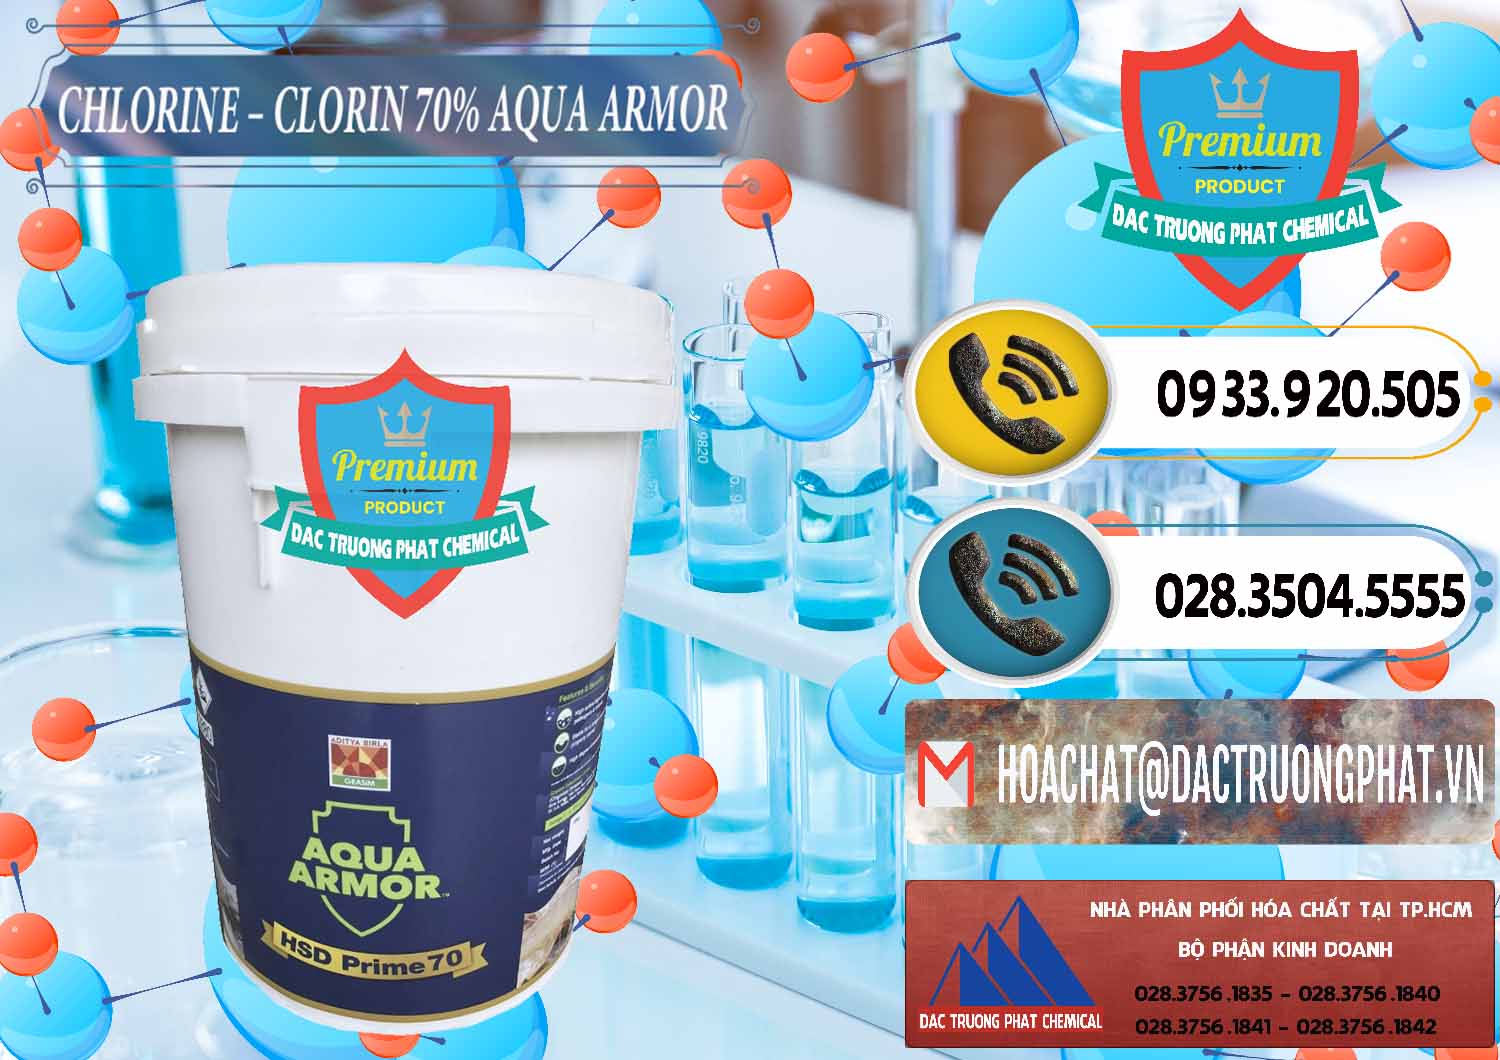 Bán và phân phối Chlorine – Clorin 70% Aqua Armor Aditya Birla Grasim Ấn Độ India - 0241 - Kinh doanh & phân phối hóa chất tại TP.HCM - hoachatdetnhuom.vn